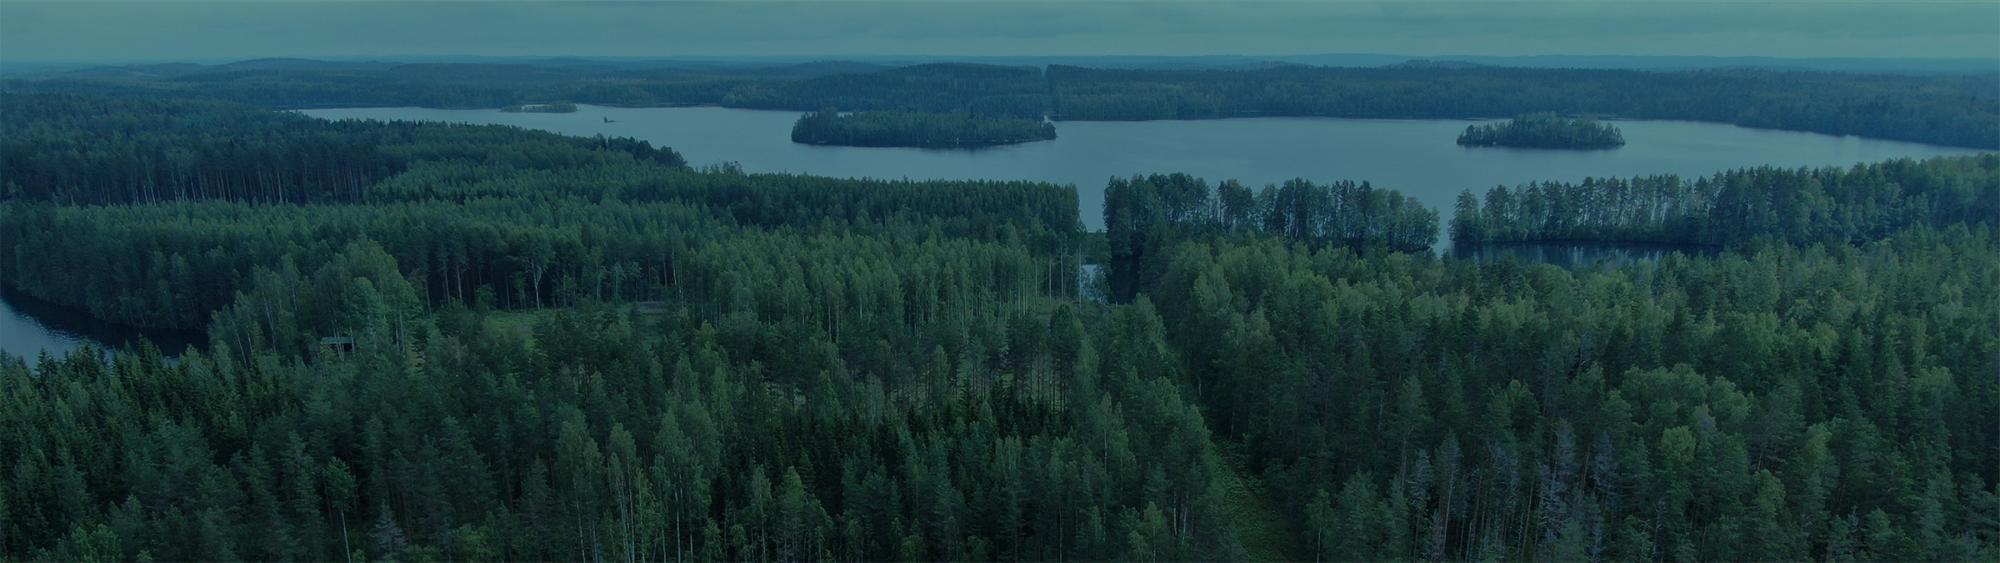 Koristeellinen kuva; ilmakuva Suomen luonnosta.